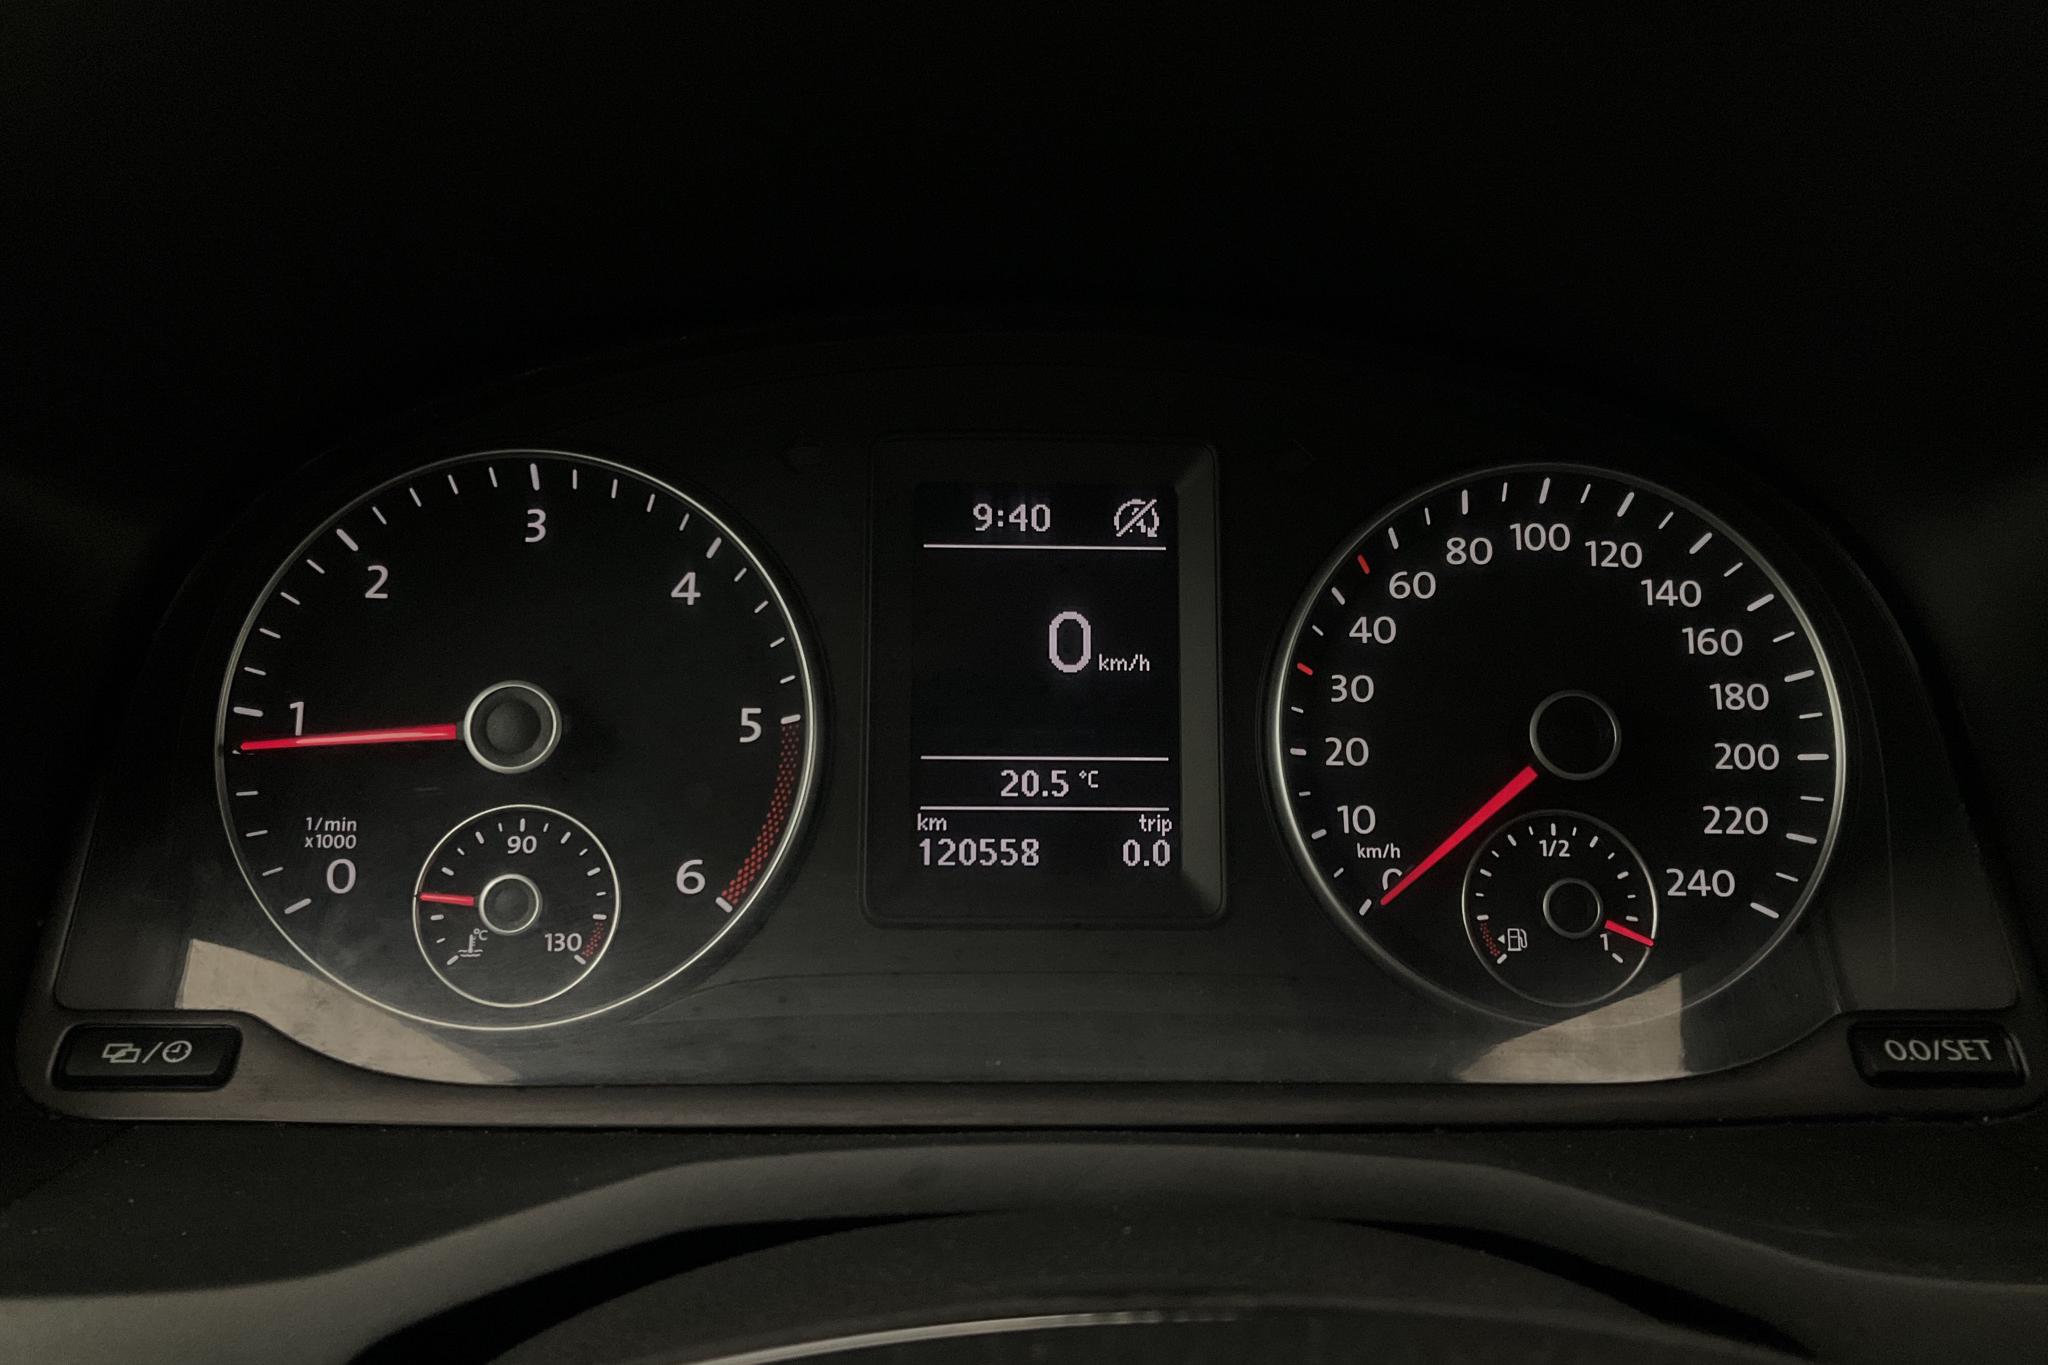 VW Caddy MPV 2.0 TDI (102hk) - 12 056 mil - Automat - silver - 2018